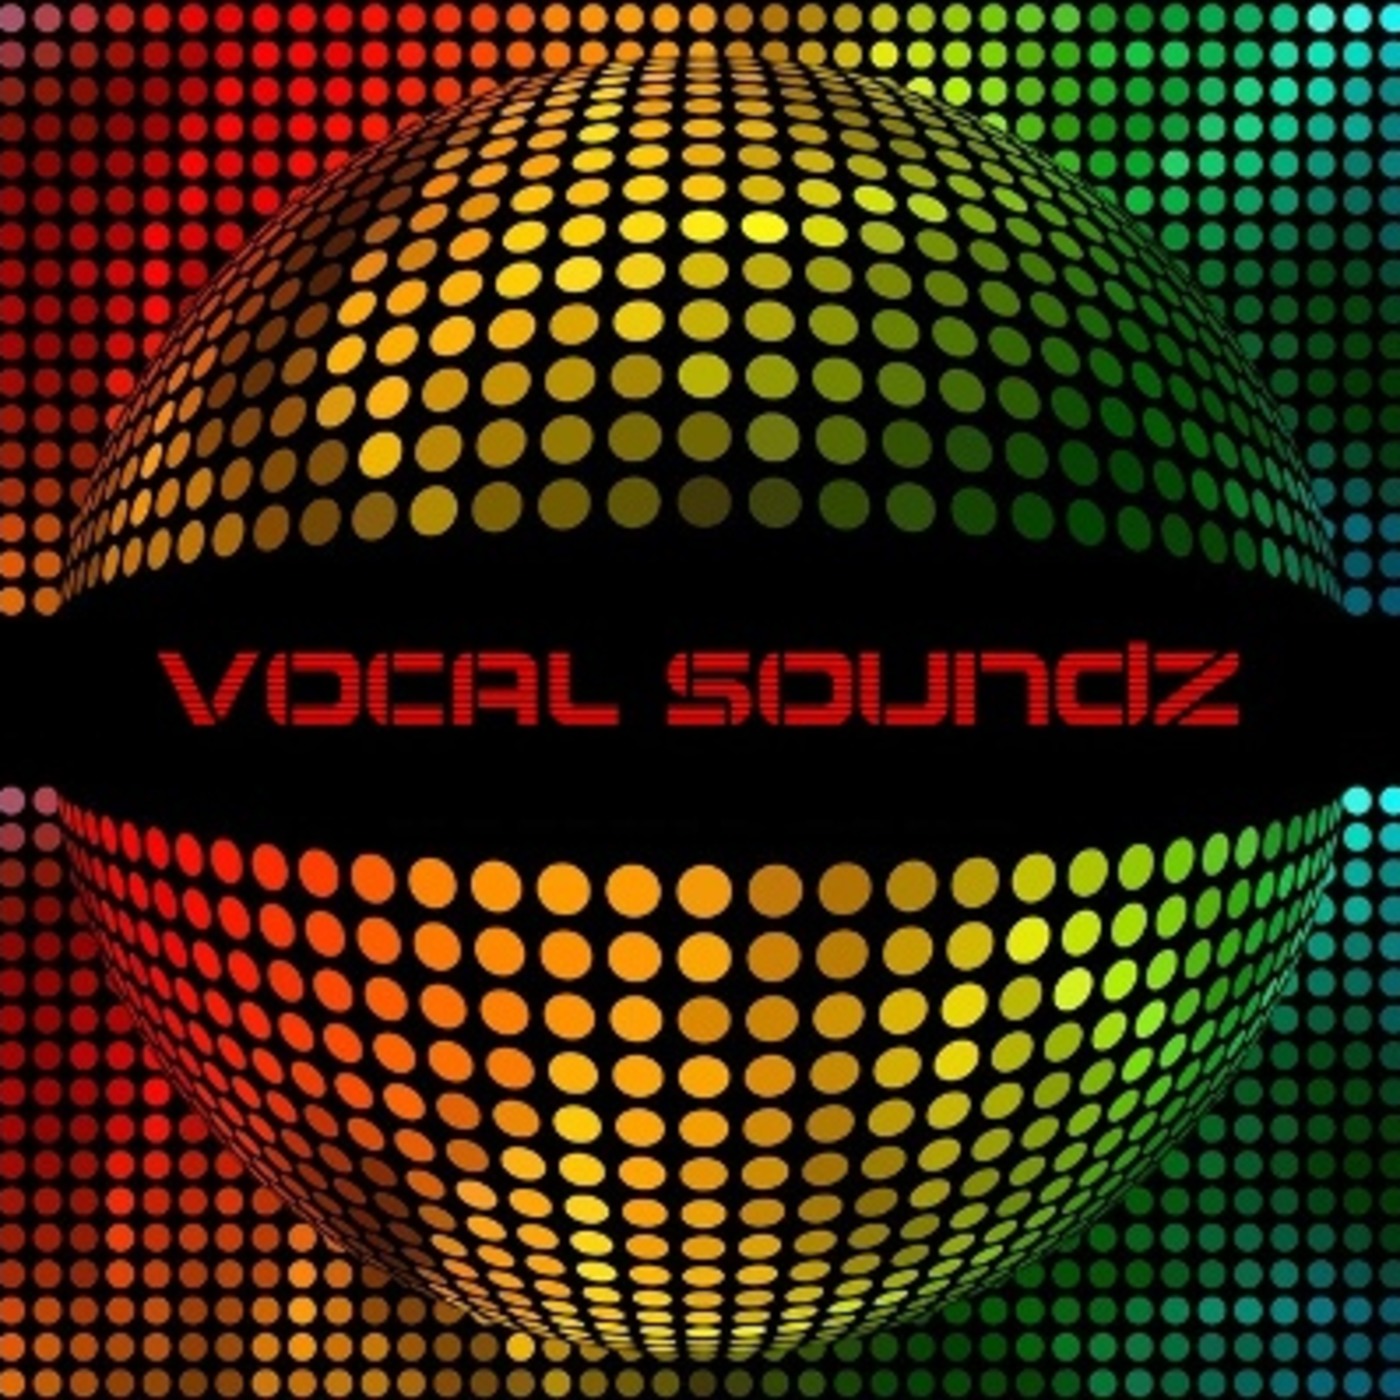 Vocal Soundz - February 2010